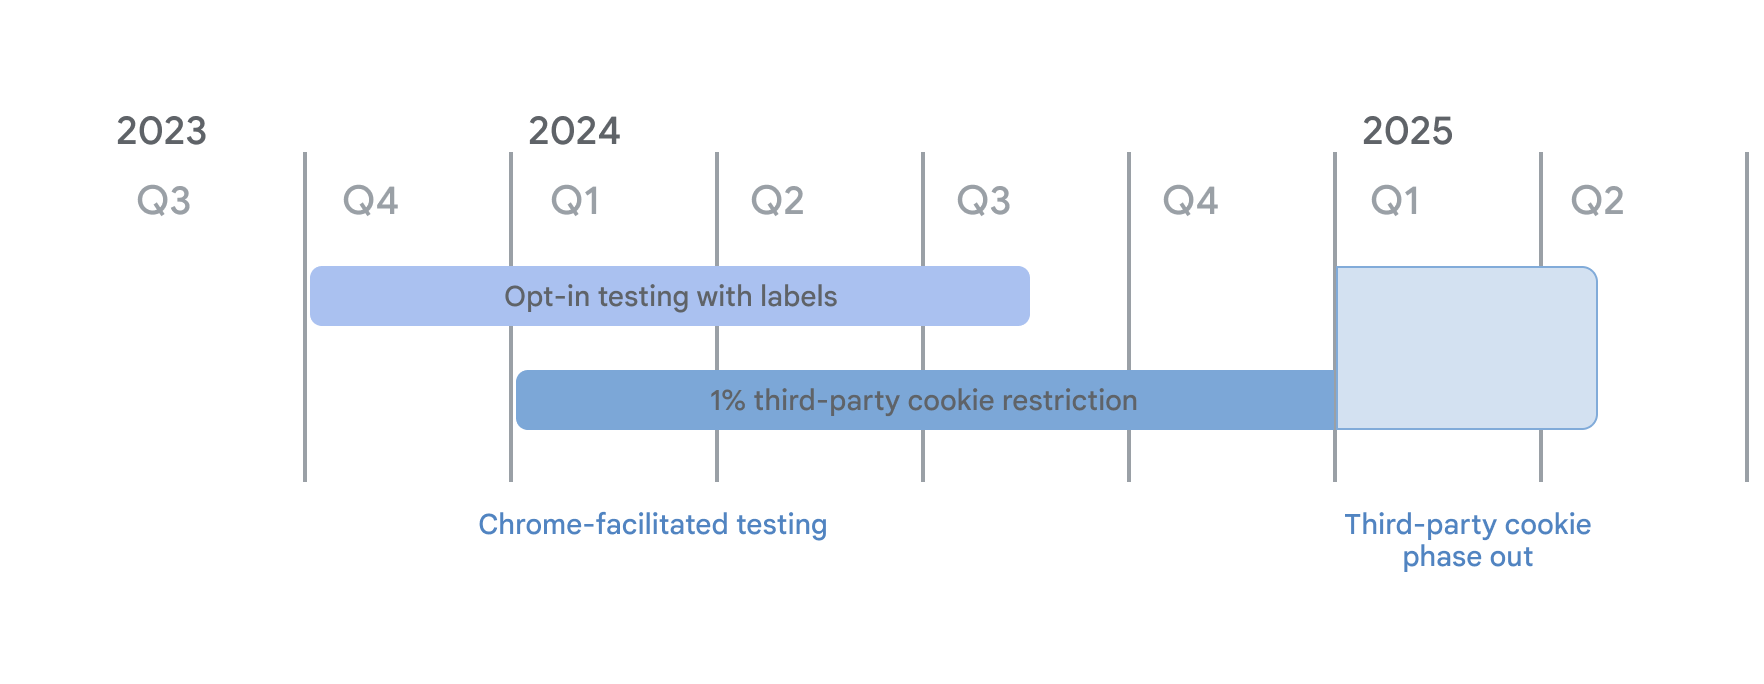 ไทม์ไลน์สําหรับการเลิกใช้งานคุกกี้ของบุคคลที่สาม จากการทดสอบที่อำนวยความสะดวกโดย Chrome การทดสอบการเลือกใช้ด้วยโหมดป้ายกำกับเริ่มต้นขึ้นในไตรมาสที่ 4 ปี 2023 และการจำกัด 3PC จำนวน 1% ตั้งแต่วันที่ 4 มกราคม 2024 ทั้ง 2 รูปแบบจะดำเนินต่อไปไปจนถึงไตรมาสที่ 1 ปี 2025 เมื่อเริ่มการยกเลิกการใช้งานคุกกี้ของบุคคลที่สาม